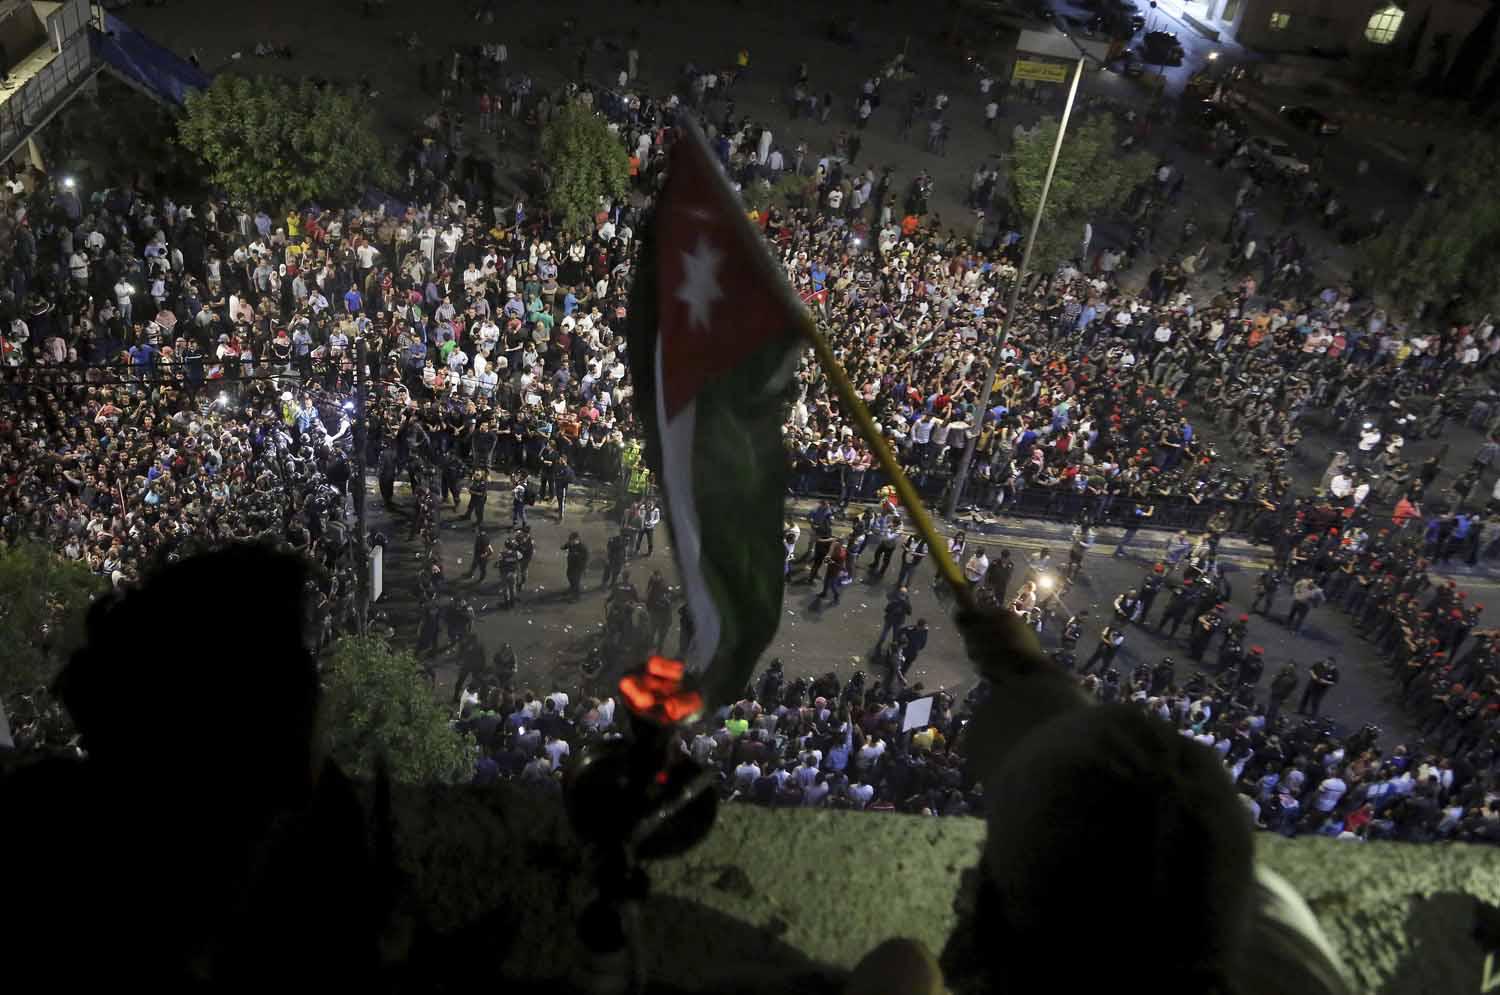 أردنيون يلوحون بعلم بلادهم من فوق بالكونة تطل على جمع متظاهر